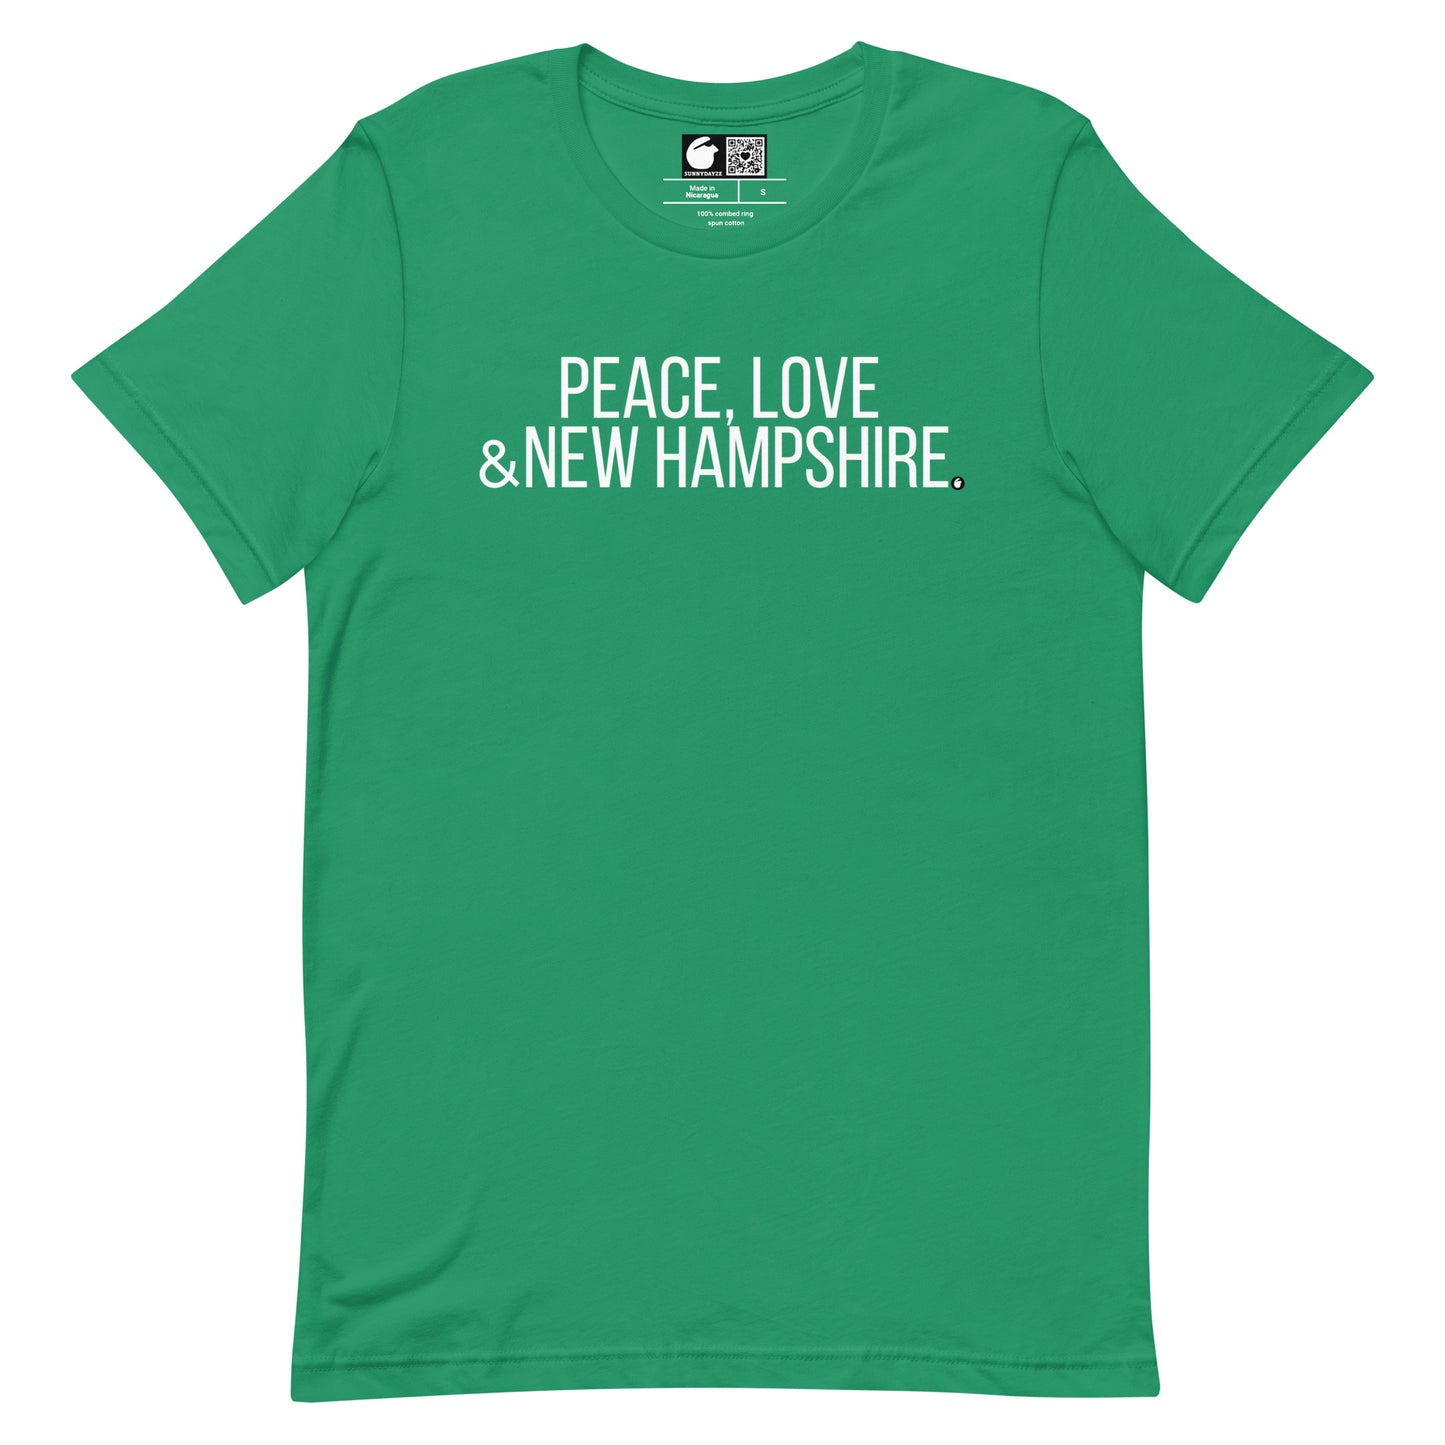 NEW HAMPSHIRE Short-Sleeve Unisex t-shirt